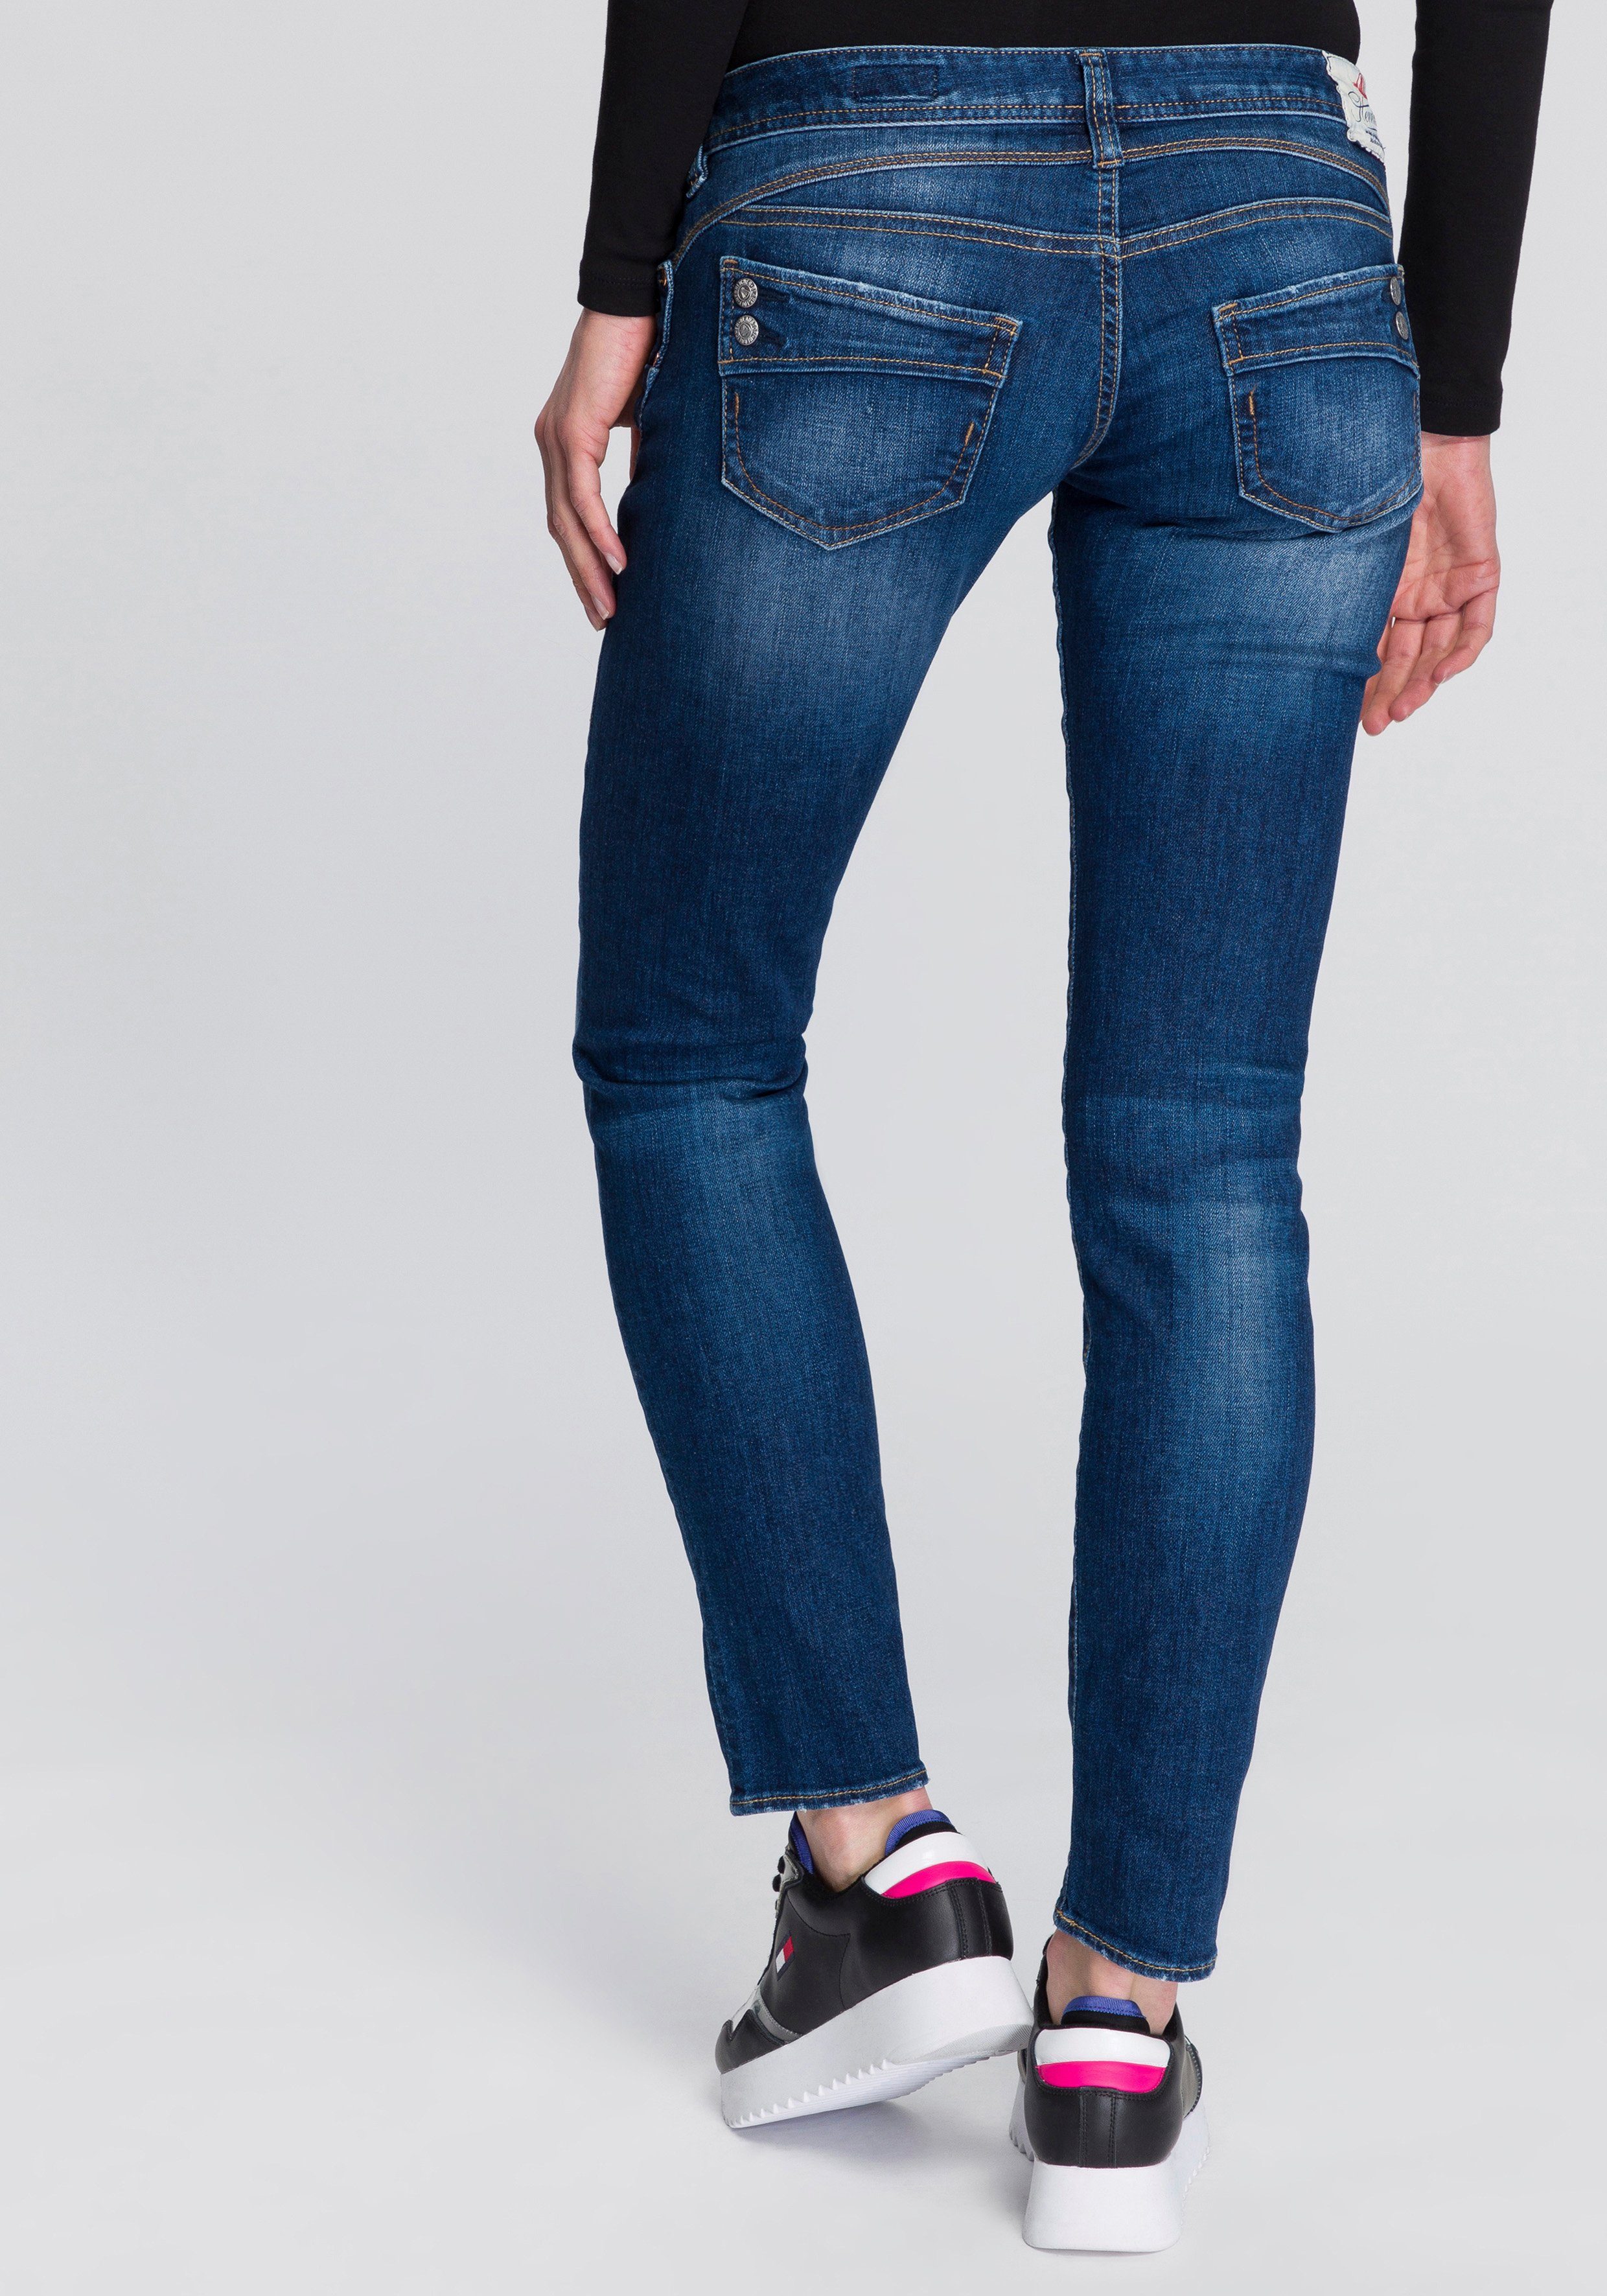 [Nur Sonderverkauf verfügbar] Herrlicher Slim-fit-Jeans PIPER umweltfreundlich Beinverlauf figurstreckendem Technology, mit Taschendesign Zierknöpfen Kitotex SLIM dank Besonderes ORGANIC und